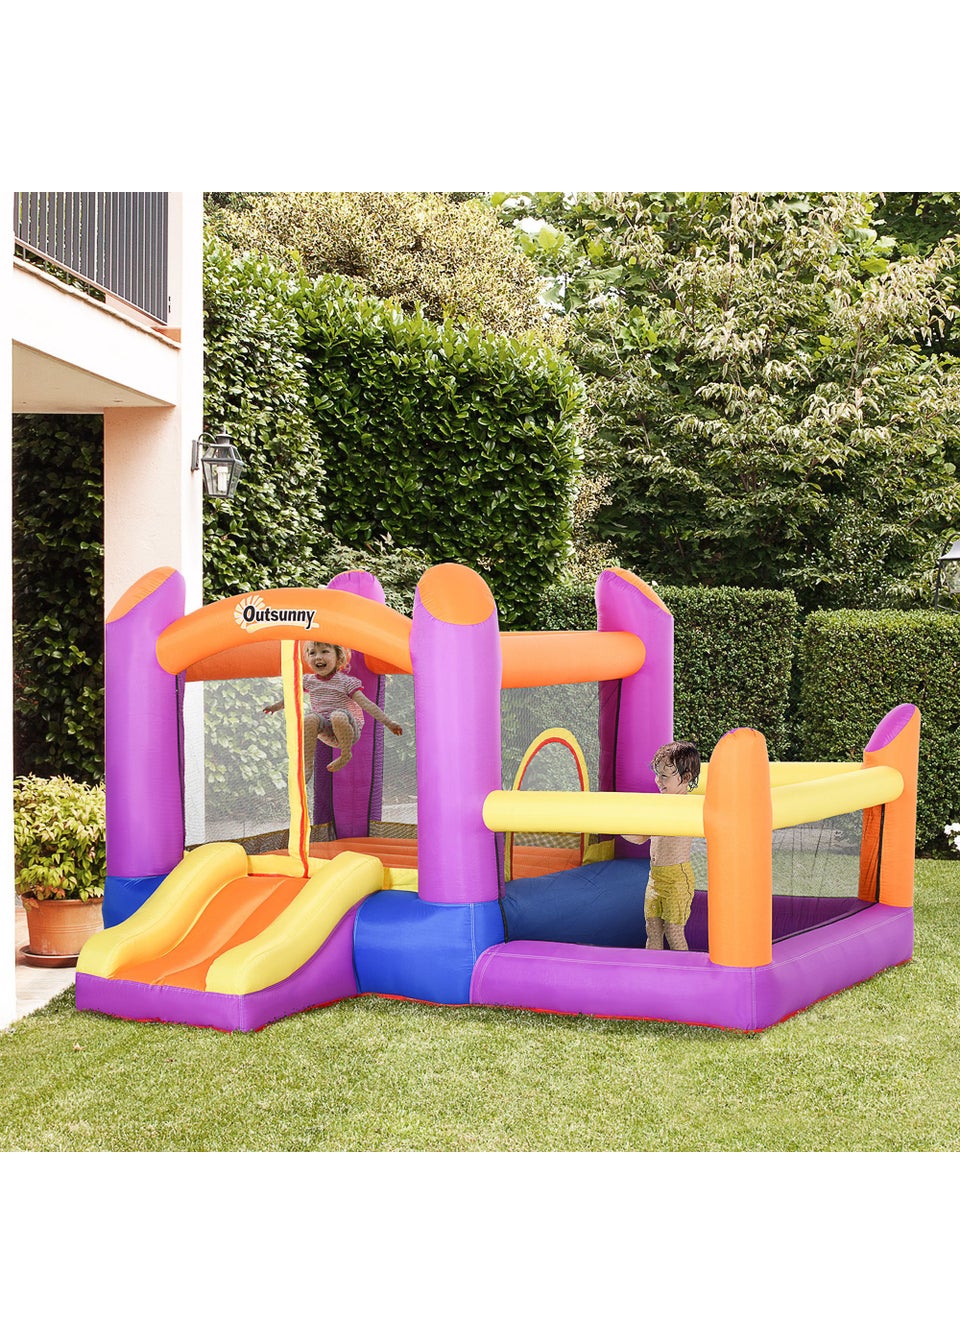 Outsunny Inflatable Bouncy Castle (170cm x 280cm x 250cm)